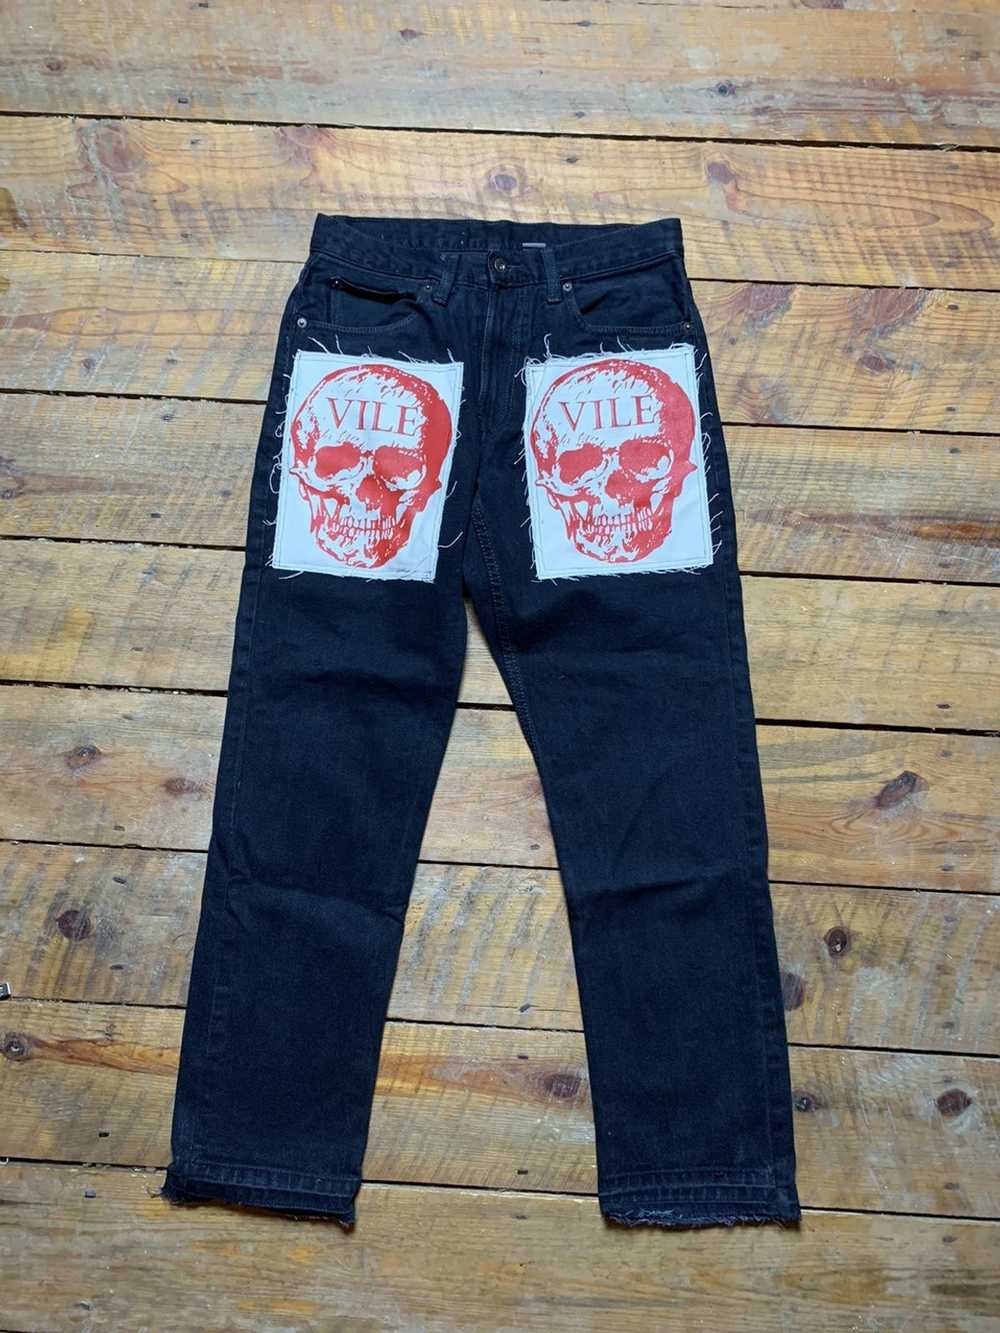 Custom × Vintage Vile skull jeans - image 2